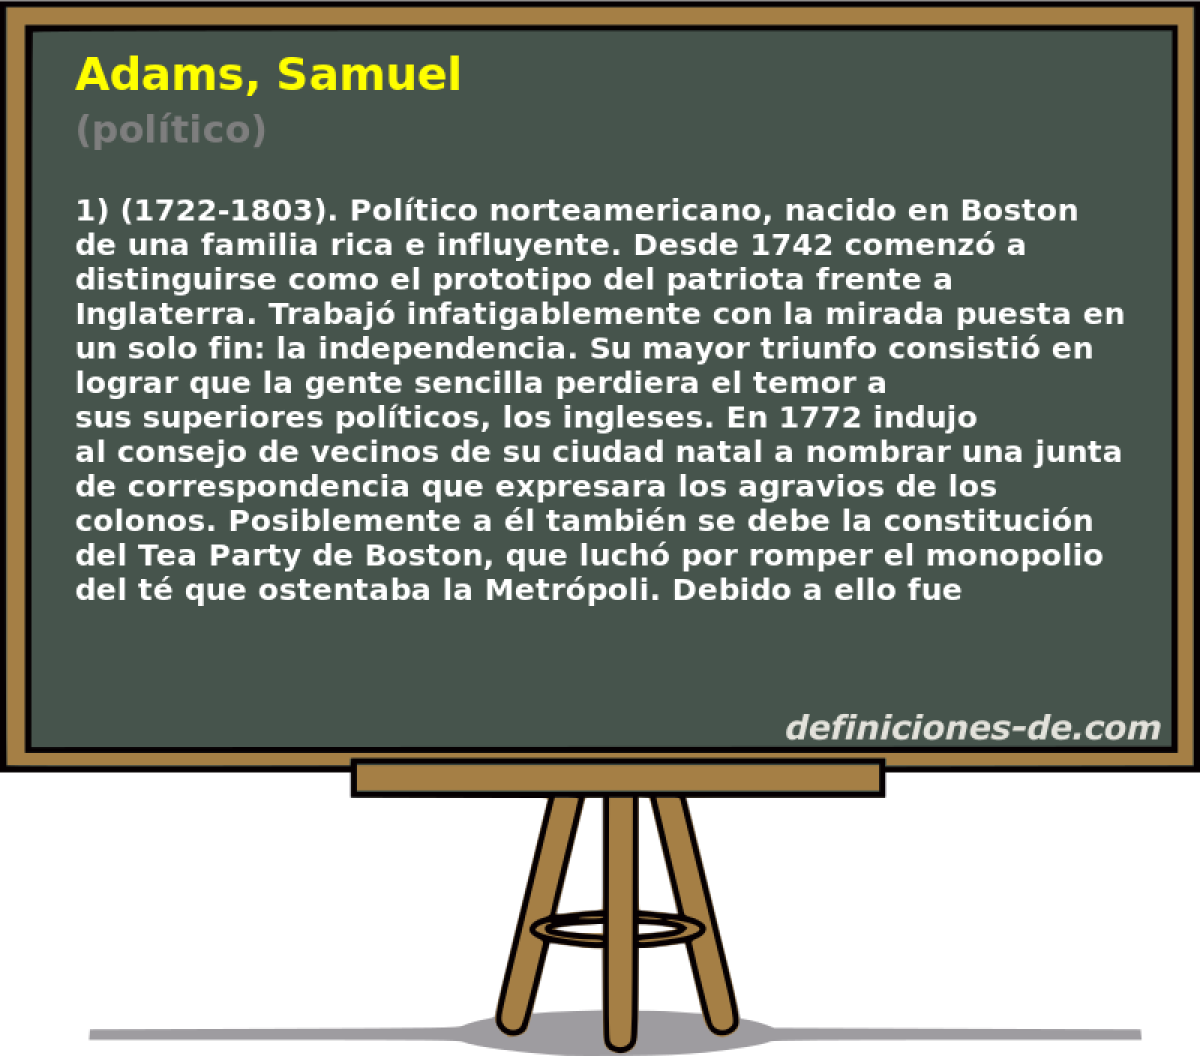 Adams, Samuel (poltico)